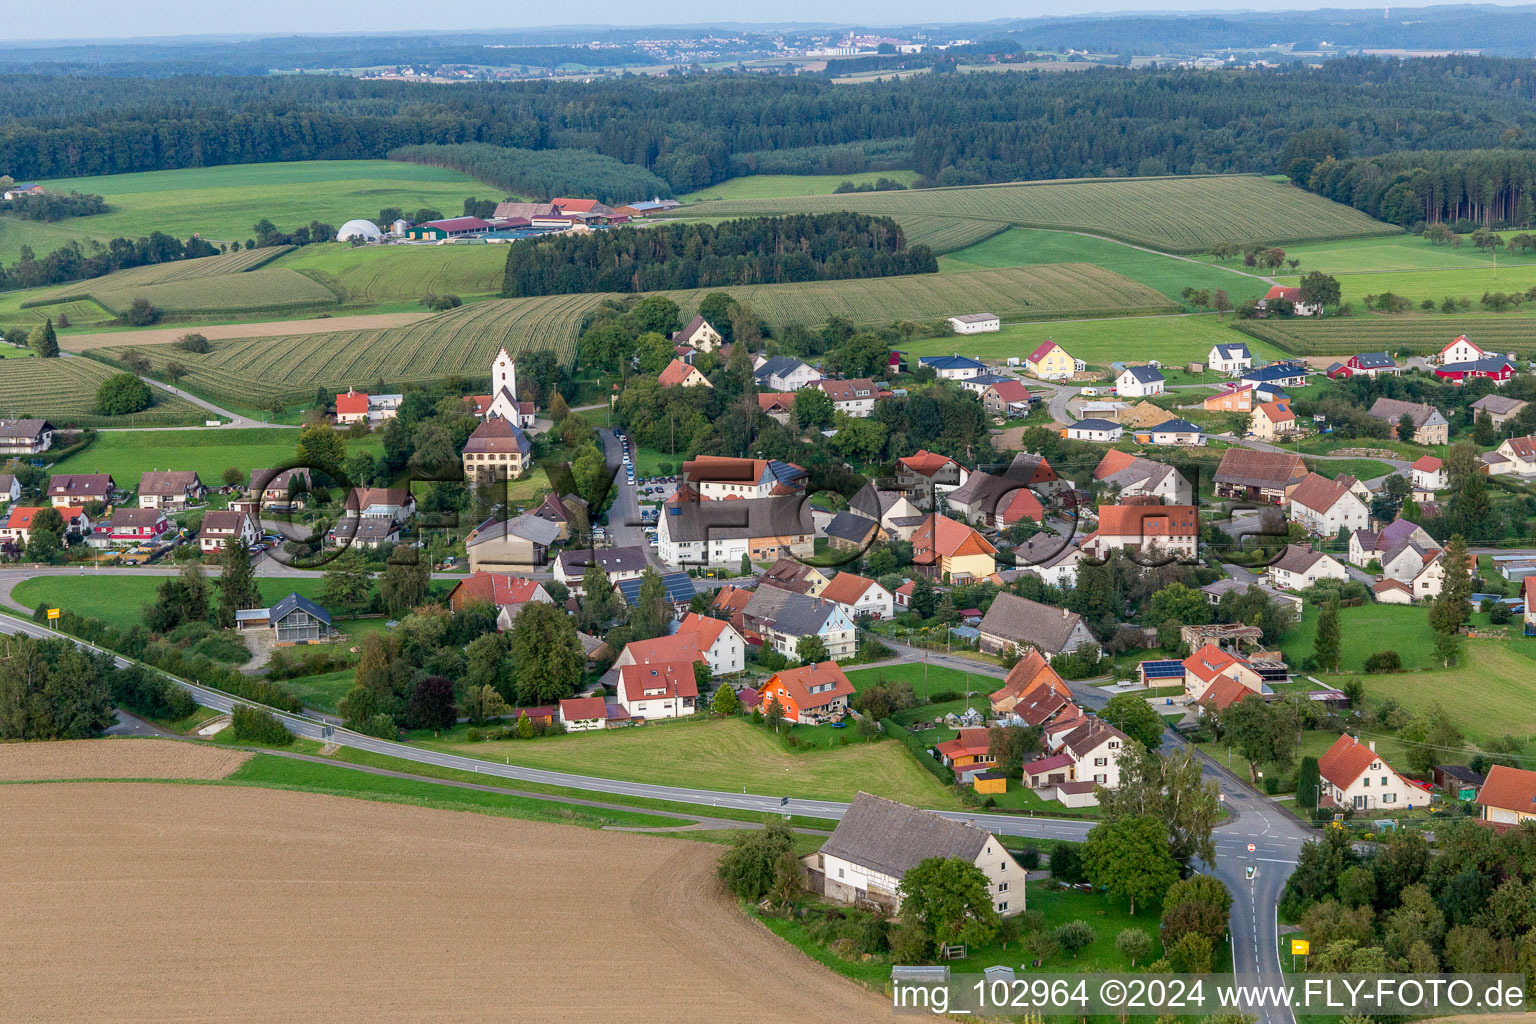 Photographie aérienne de Champs agricoles et surfaces utilisables à Sentenhart dans le département Bade-Wurtemberg, Allemagne